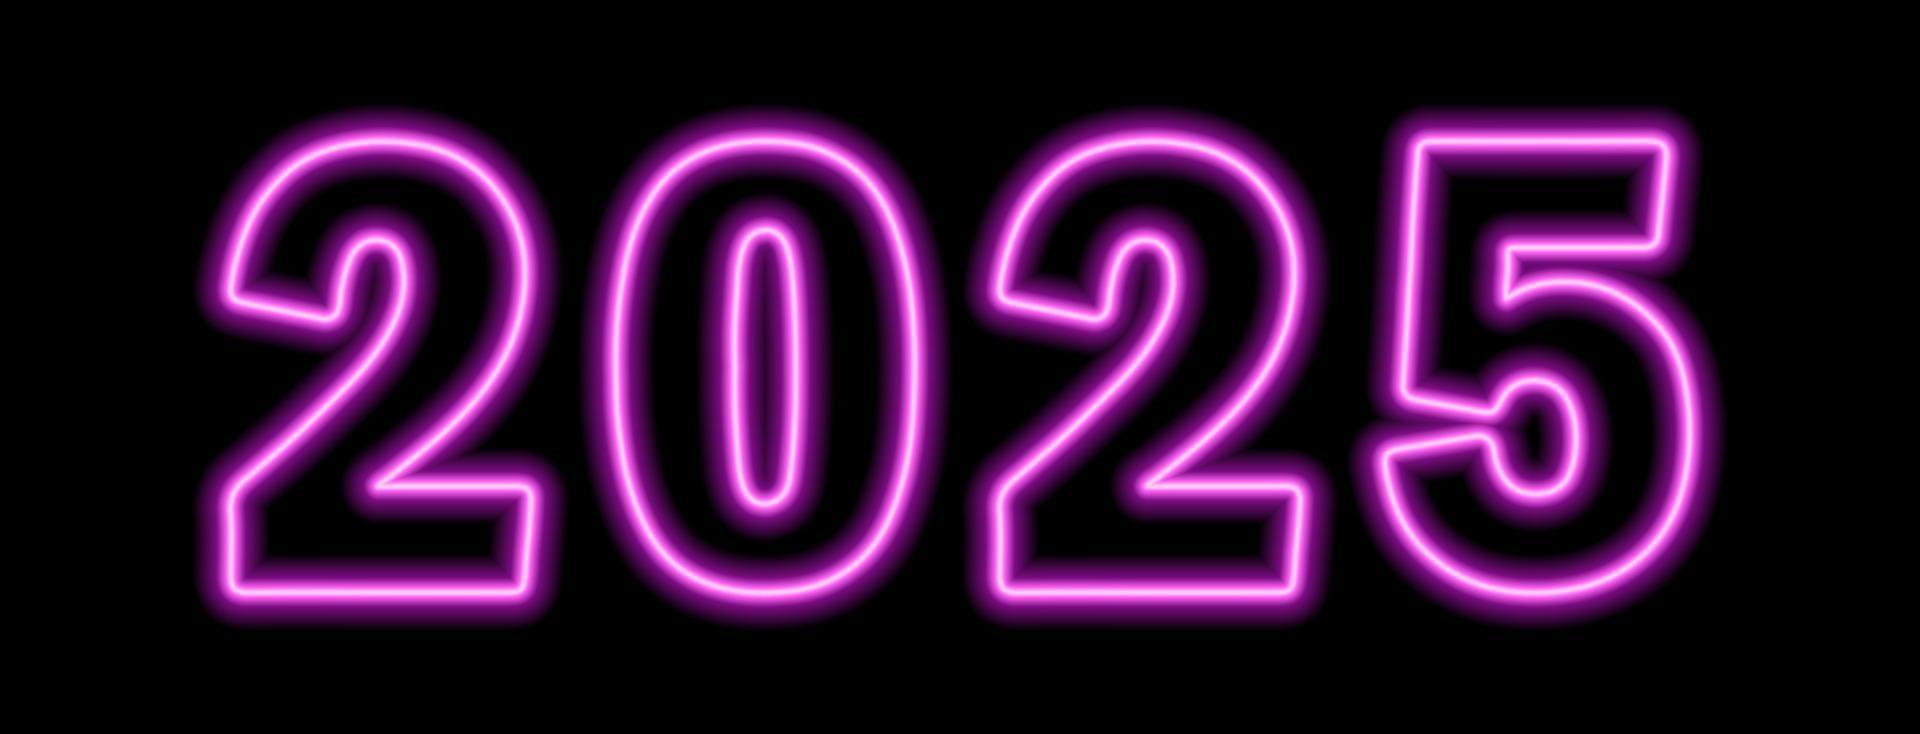 rosa neonfarbenes 2025-jahr auf schwarzem hintergrund vektor